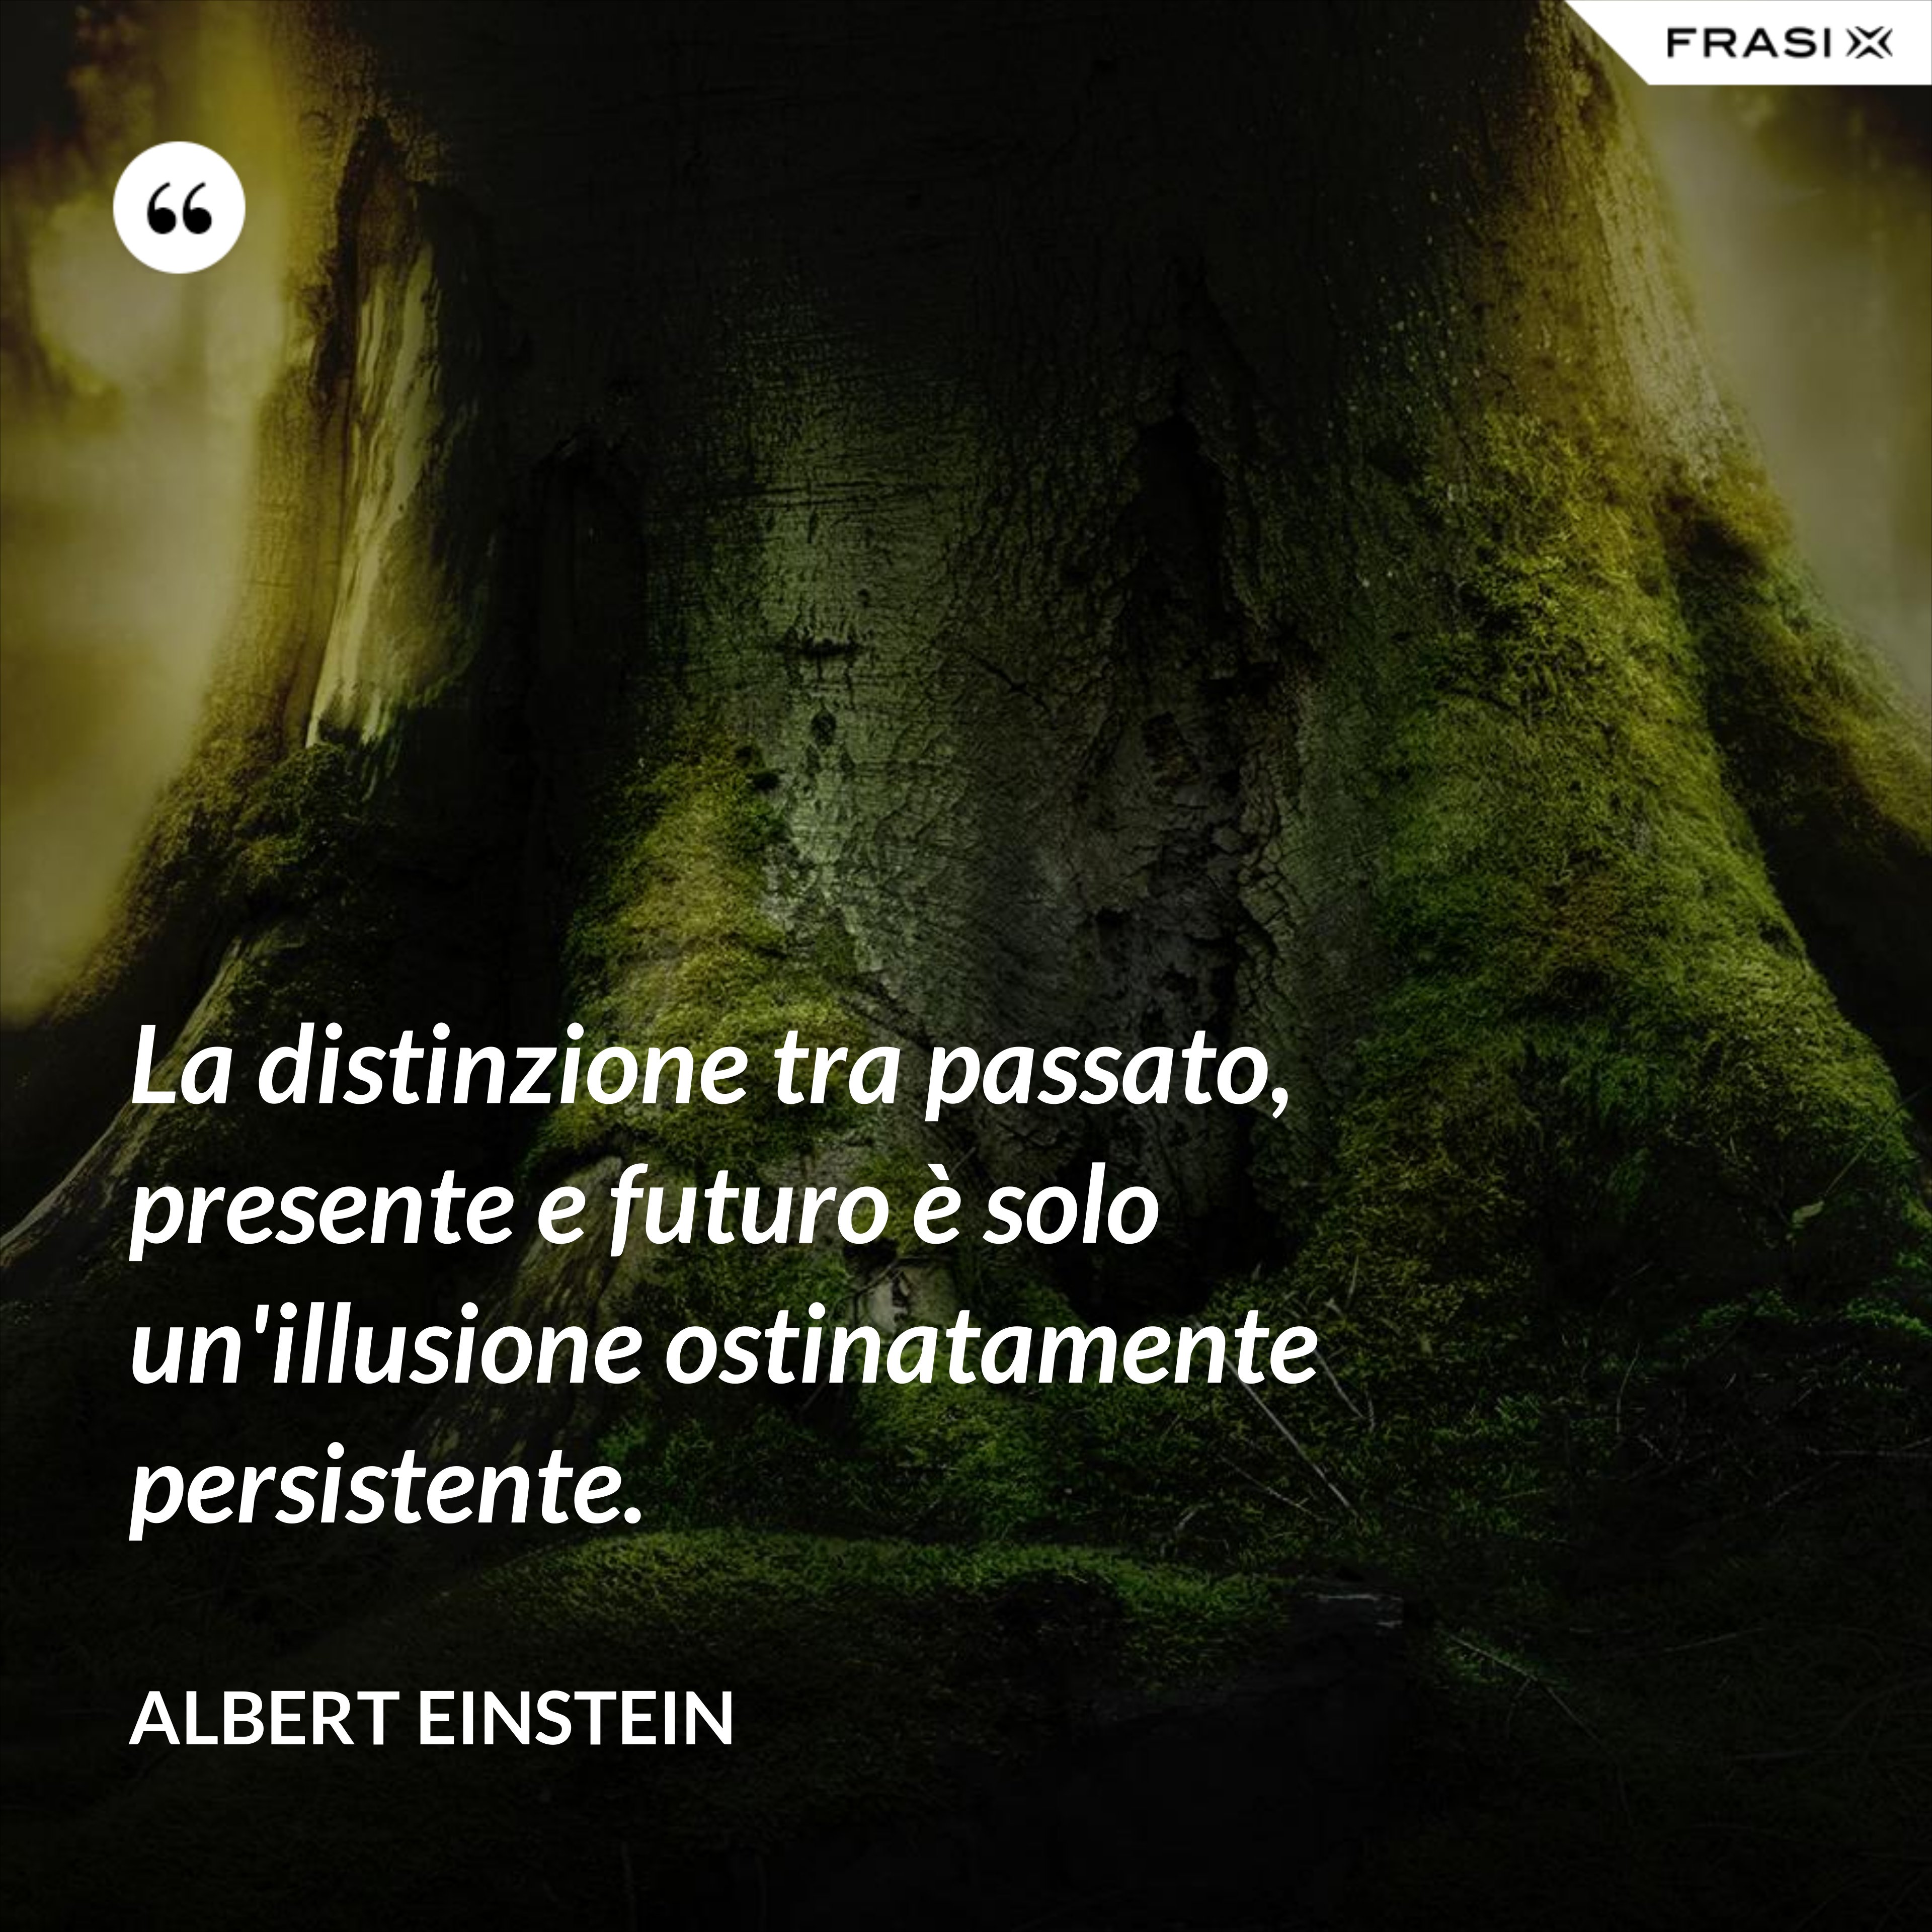 La distinzione tra passato, presente e futuro è solo un'illusione ostinatamente persistente. - Albert Einstein